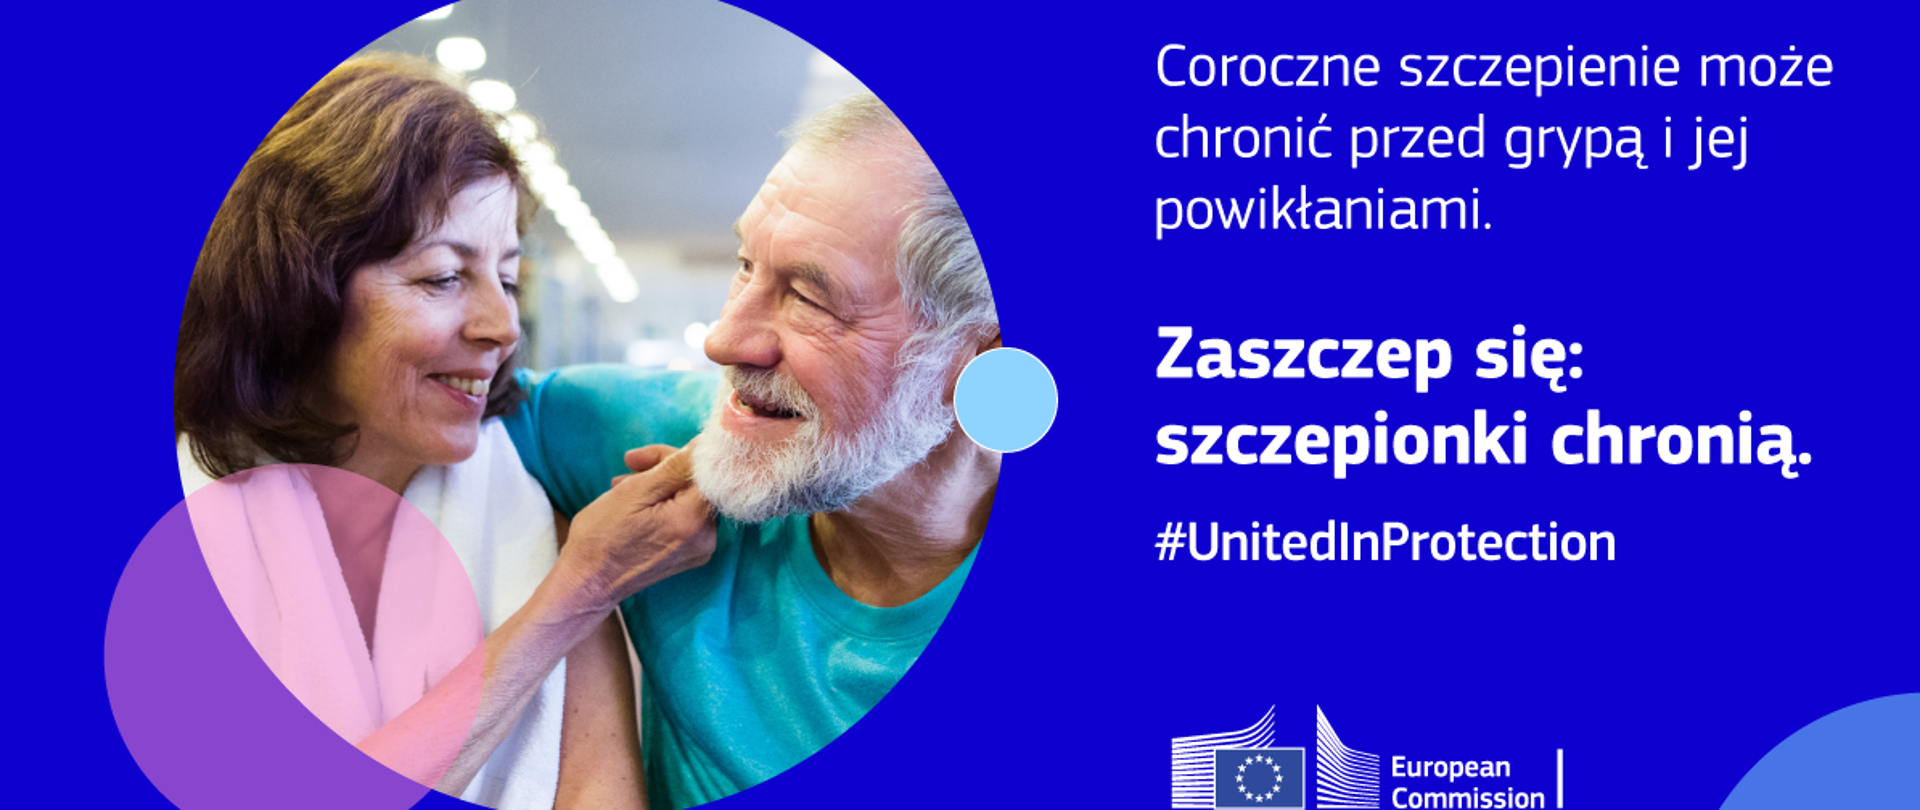 Kampania Komisji Europejskiej na rzecz szczepień United In Protection
(#UnitedInProtection), która ma na celu zwiększenie zaufania poprzez podniesienie
świadomości korzyści płynących ze szczepień, pod hasłem Zaszczep się: szczepionki chronią
